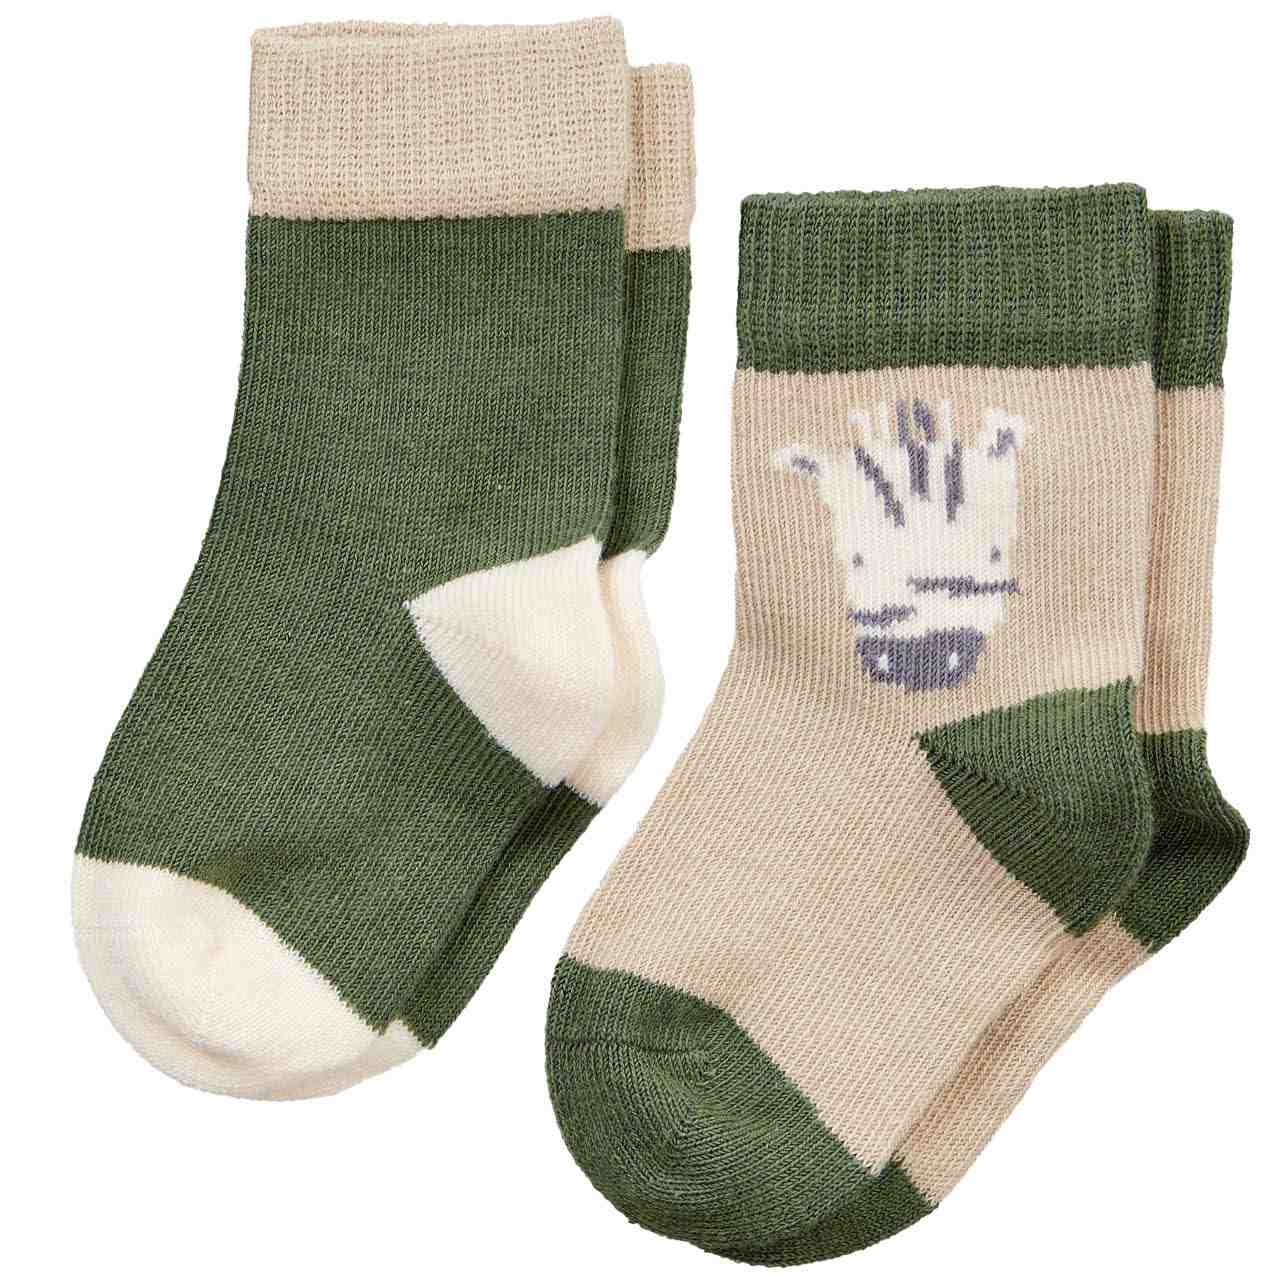 Socken 2er Pack Zebra oliv-grün